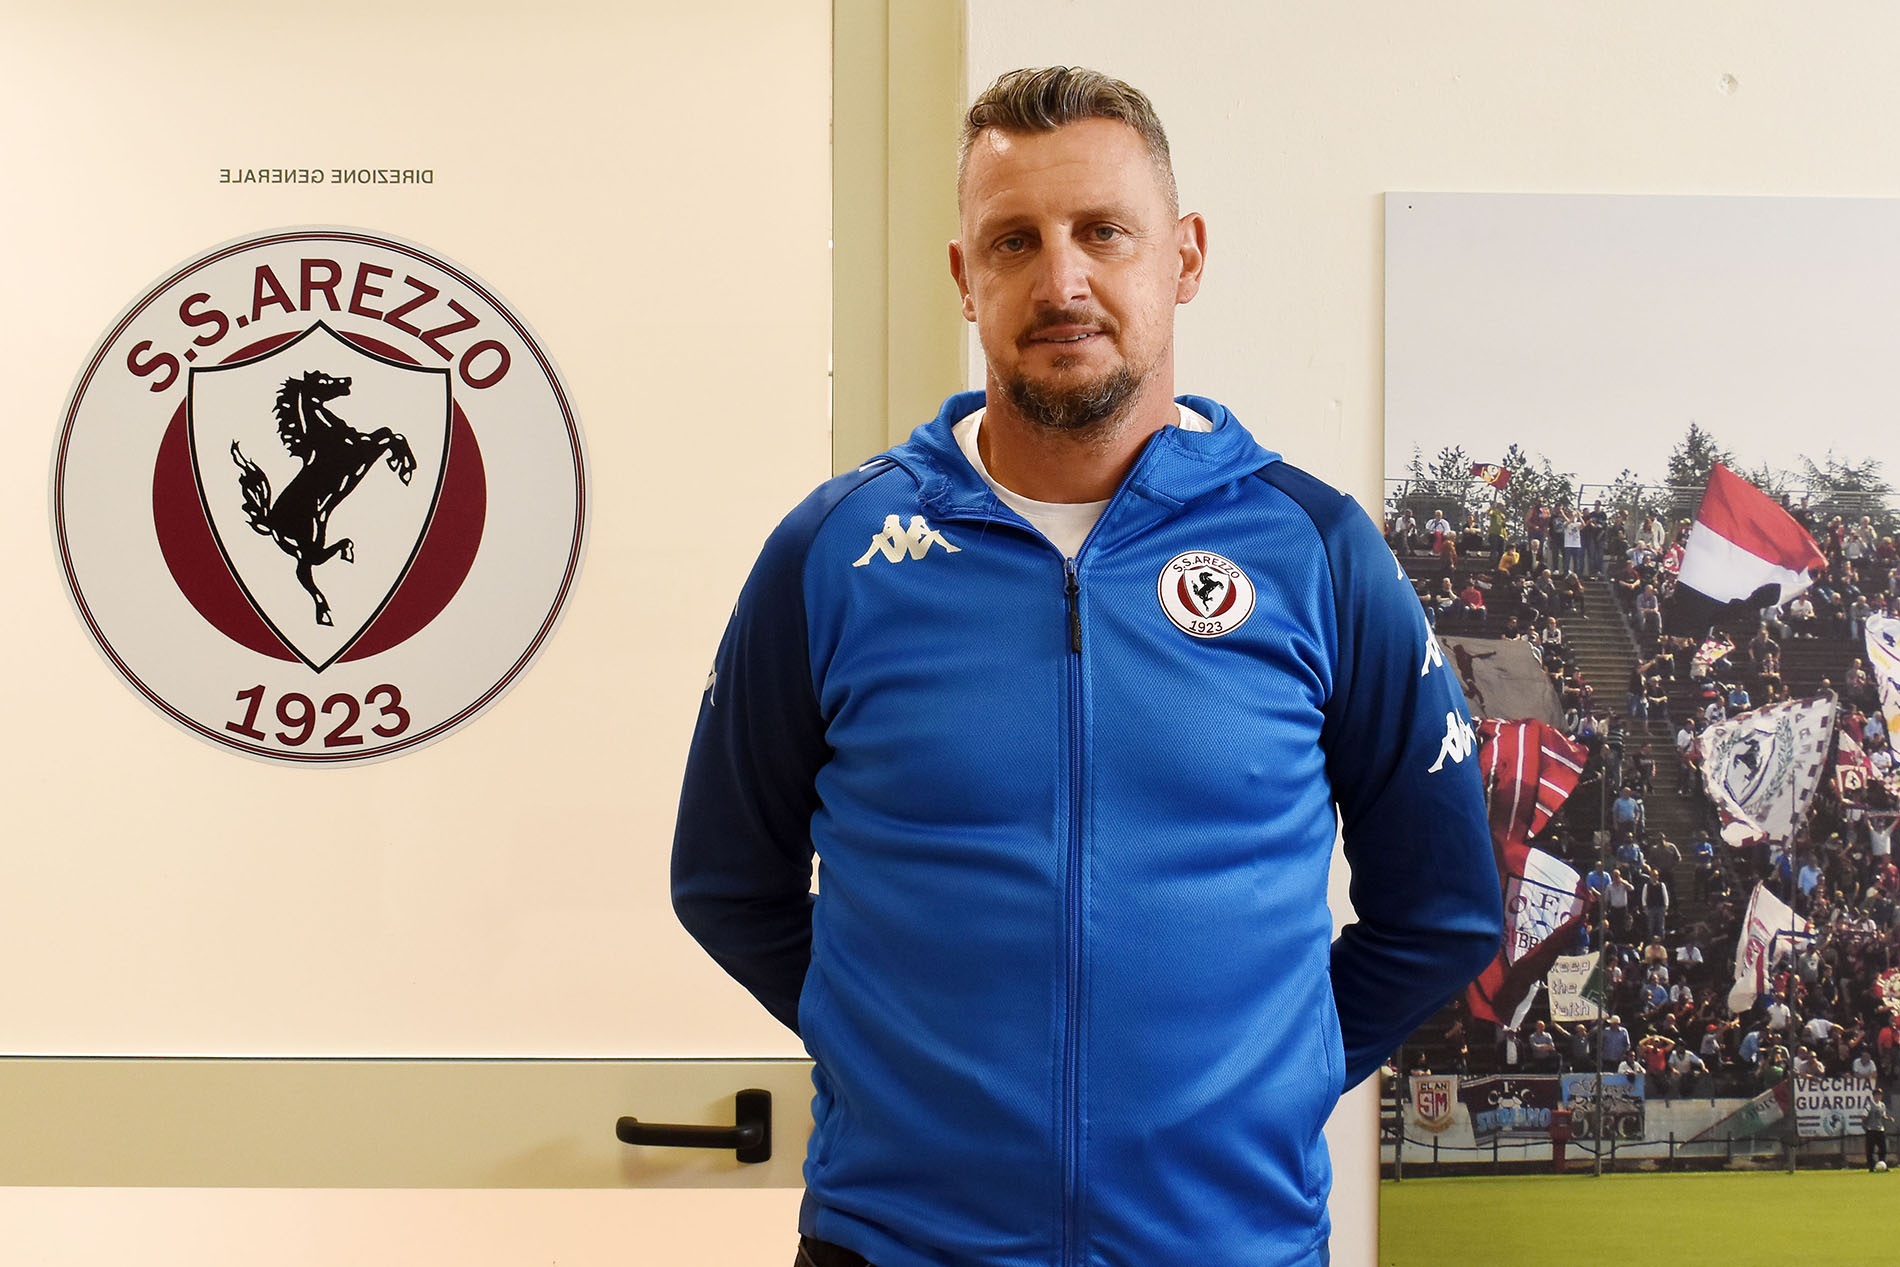 S.S. Arezzo: Andrea Camplone ha firmato con il Cavallino ed è il nuovo allenatore della Prima Squadra